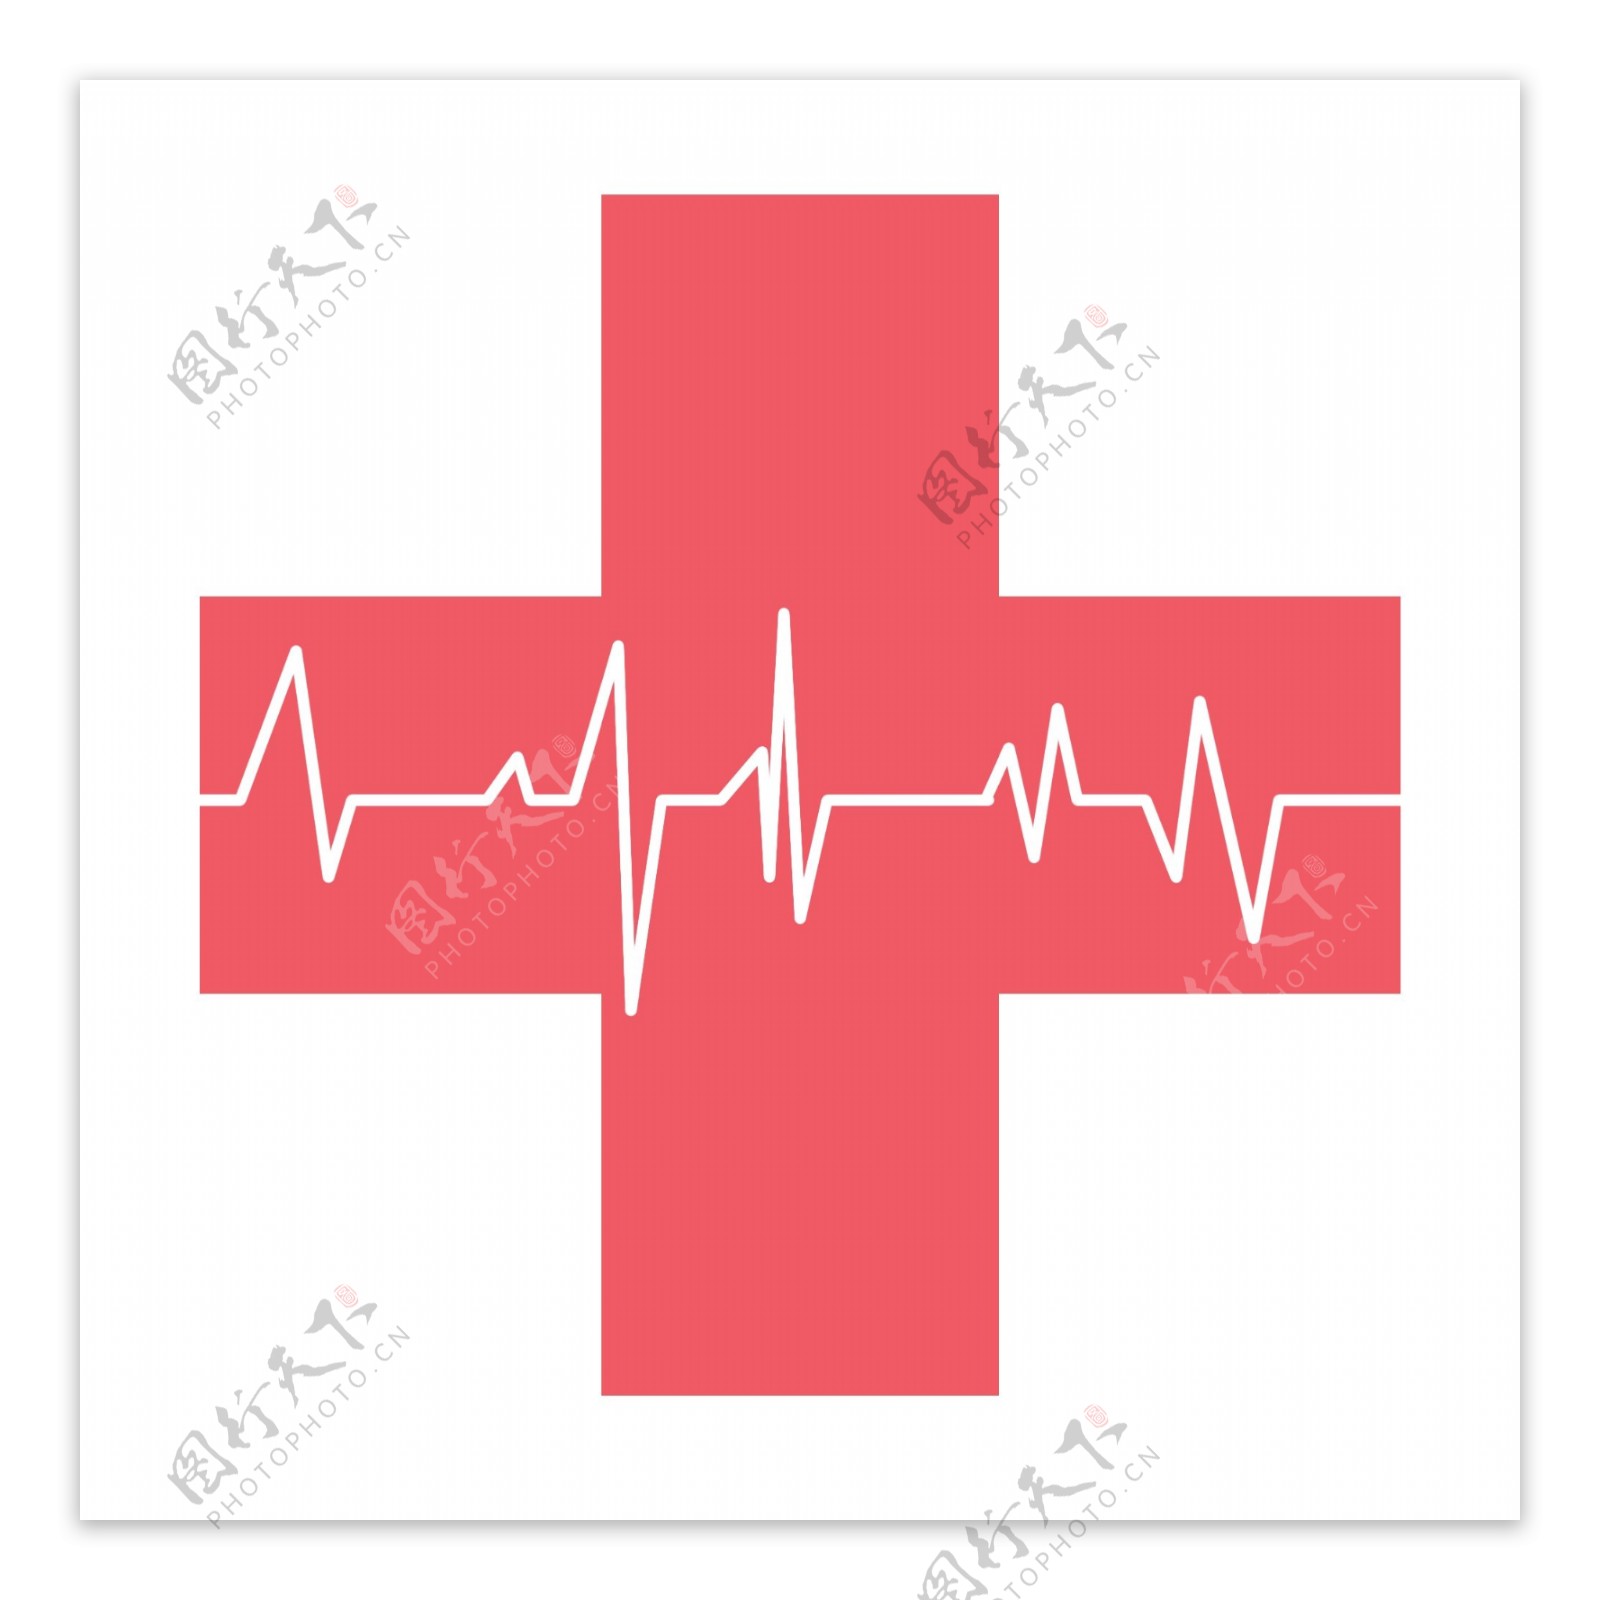 红十字公益图标